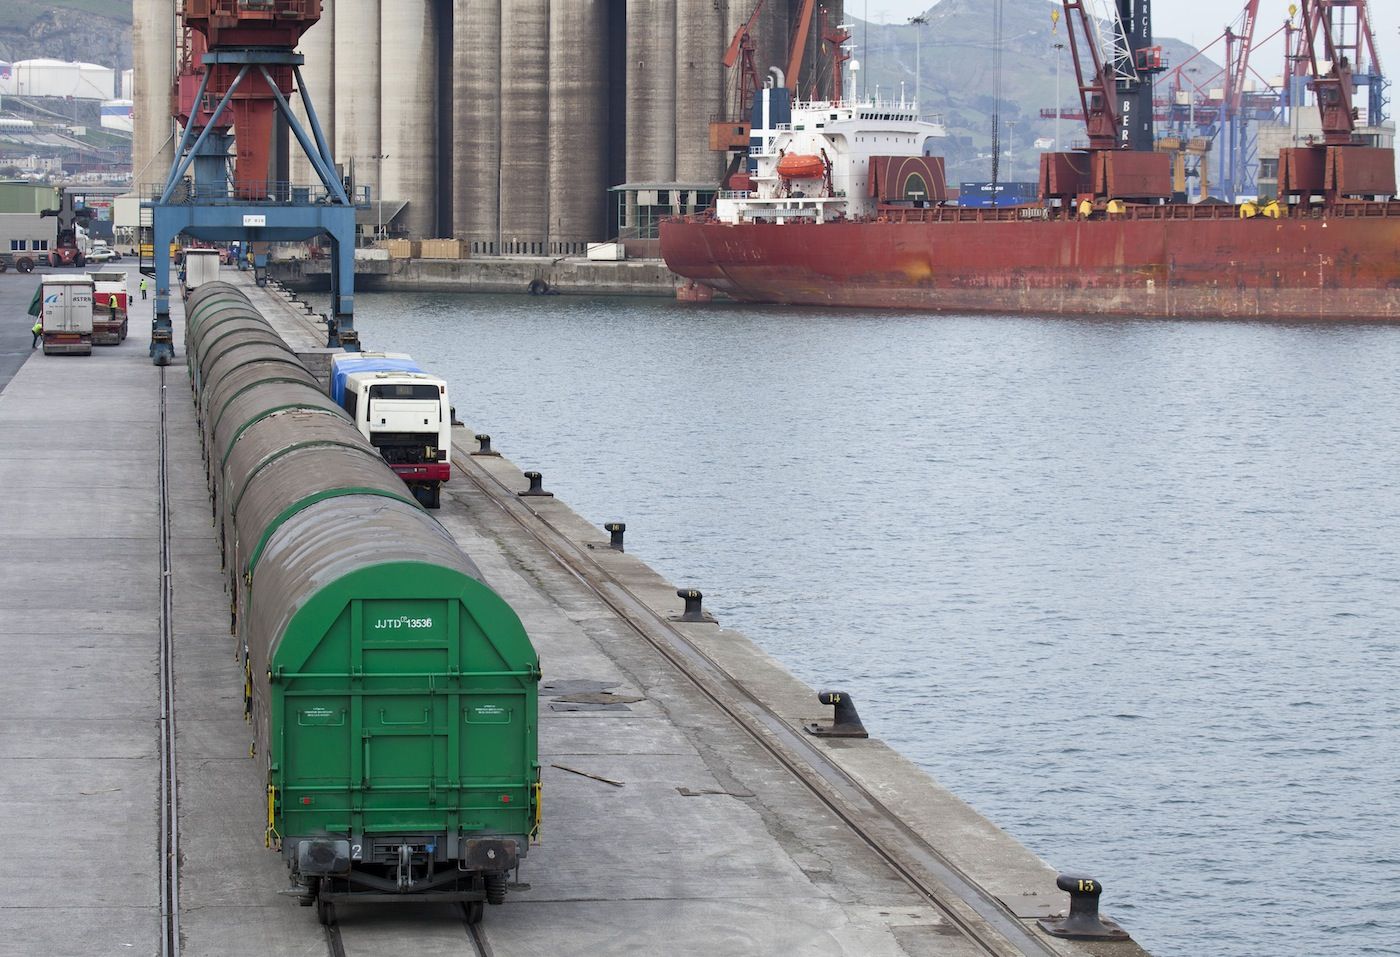 Intermodal tren vagones cerrados en el puerto de Bilbao